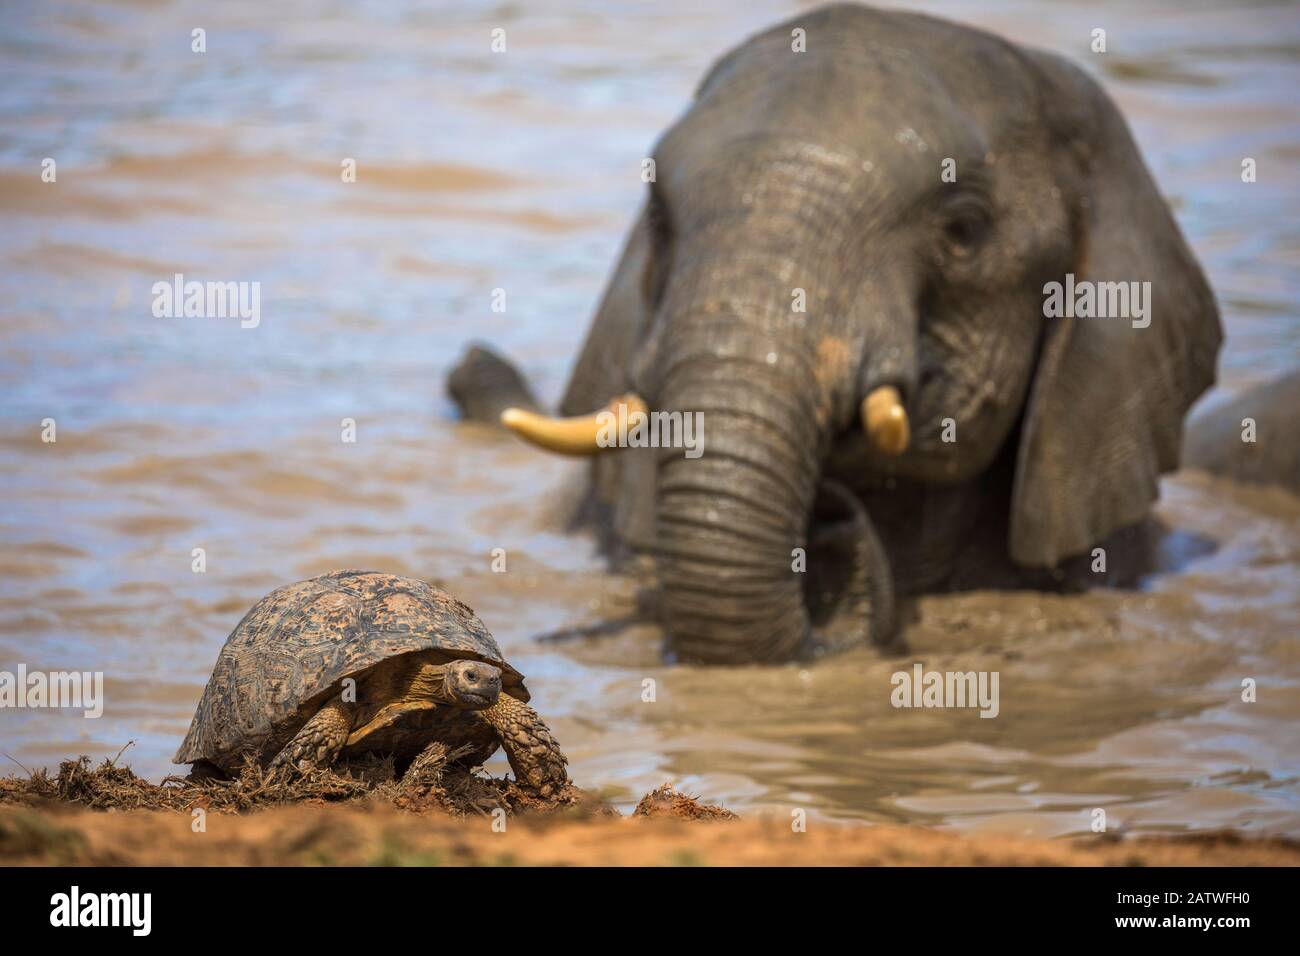 Léopard / tortue de montagne (Stigmochelys pardalis) avec taureau d'éléphant (Loxodonta africana) derrière dans l'eau, parc national Addo Elephant, Cap oriental, Afrique du Sud, septembre Banque D'Images